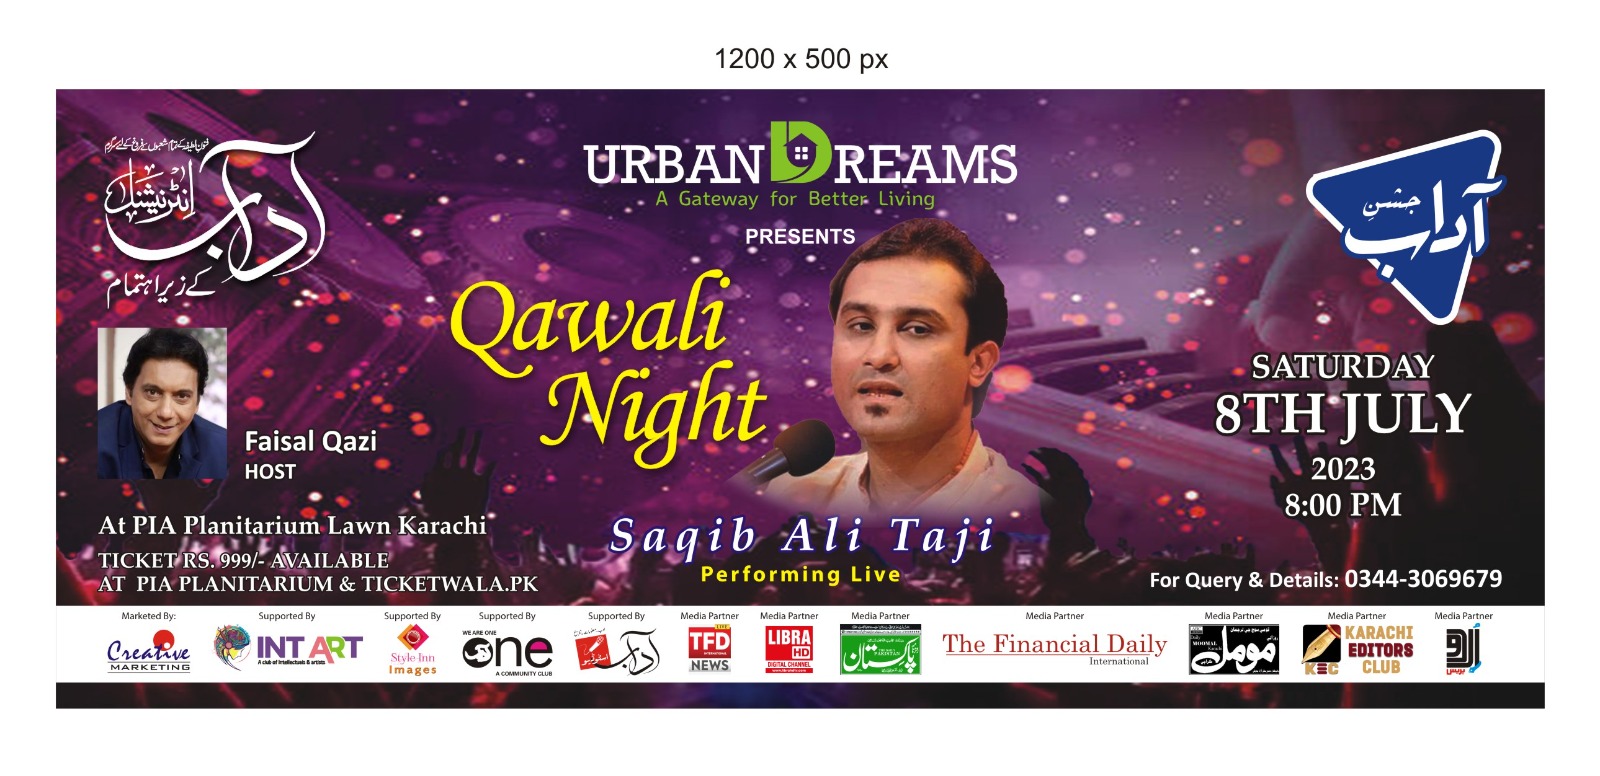 Qawali Night Musical Evening with Saqib Ali Taji